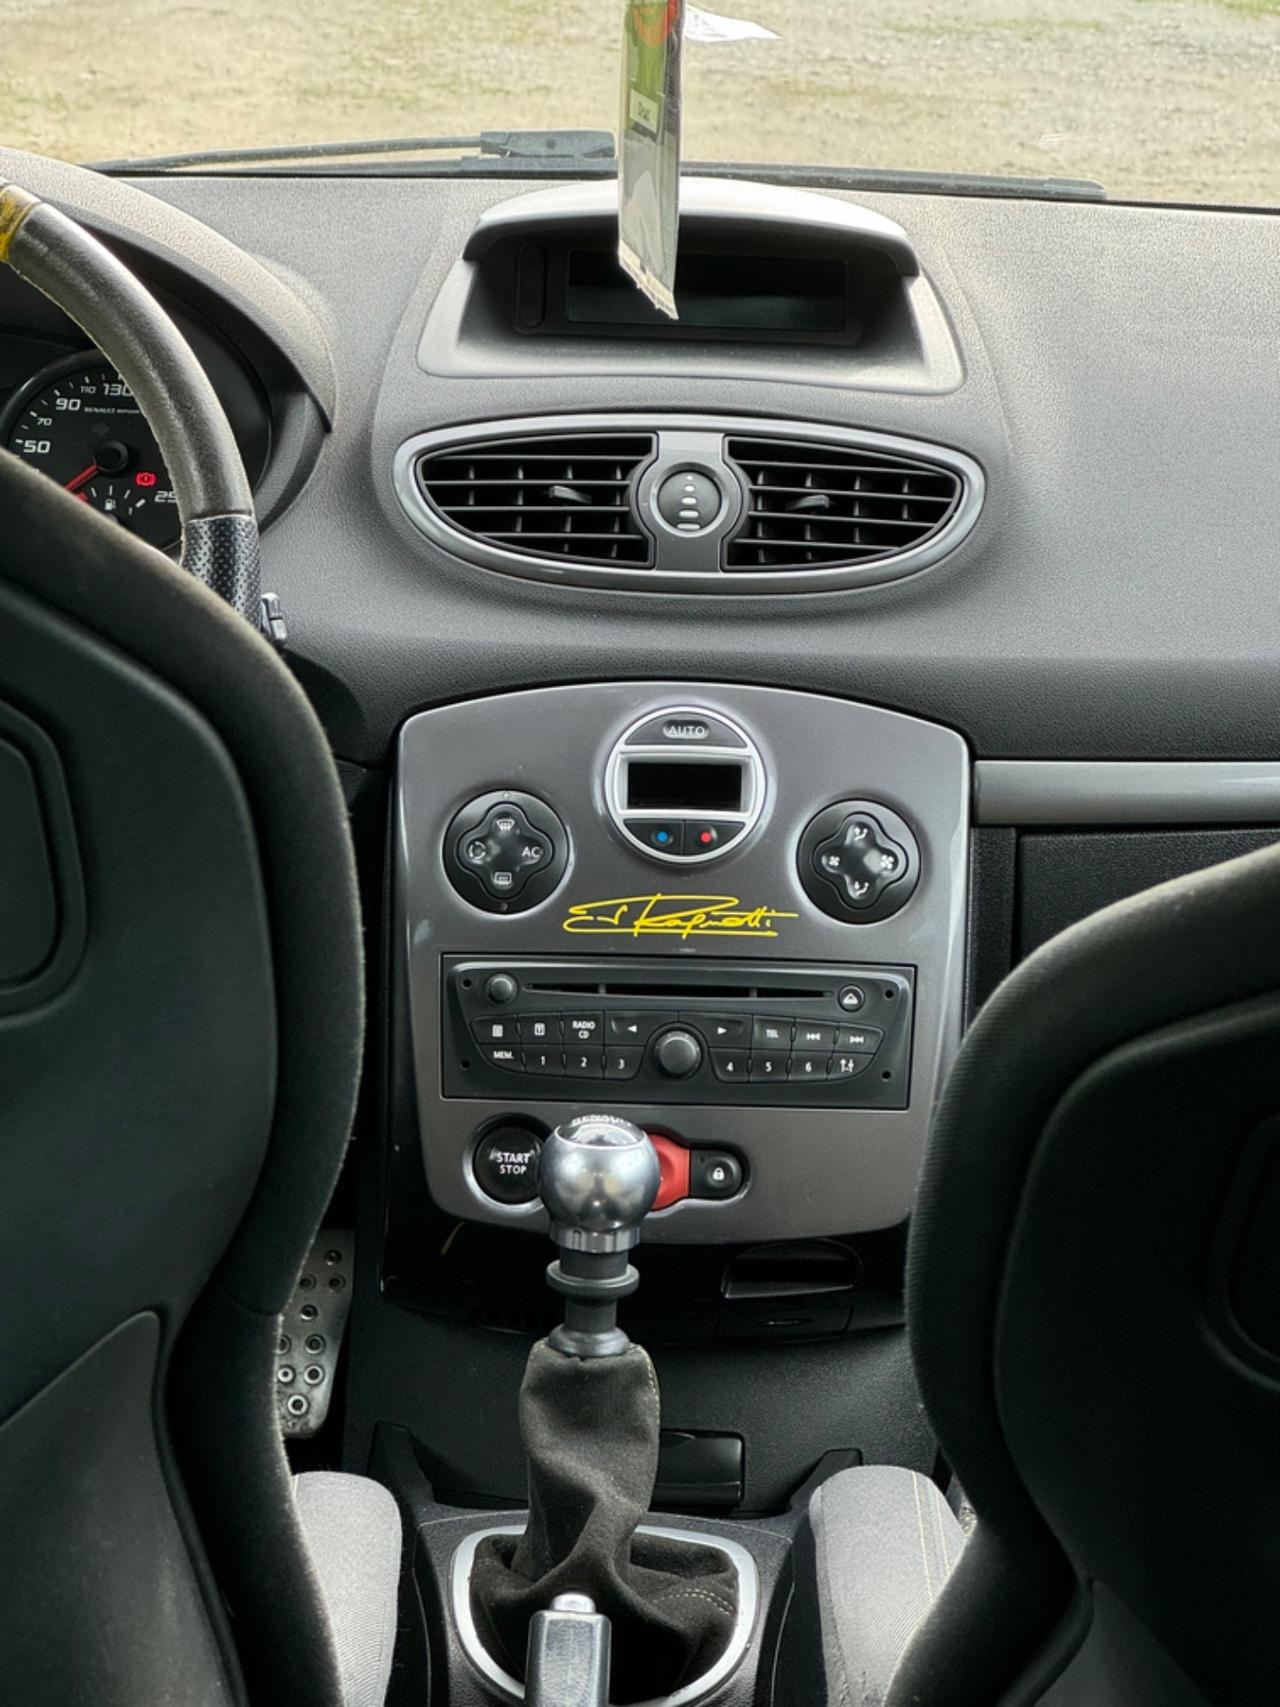 Renault Clio 2.0 16V 203CV 3 porte RS Gordini